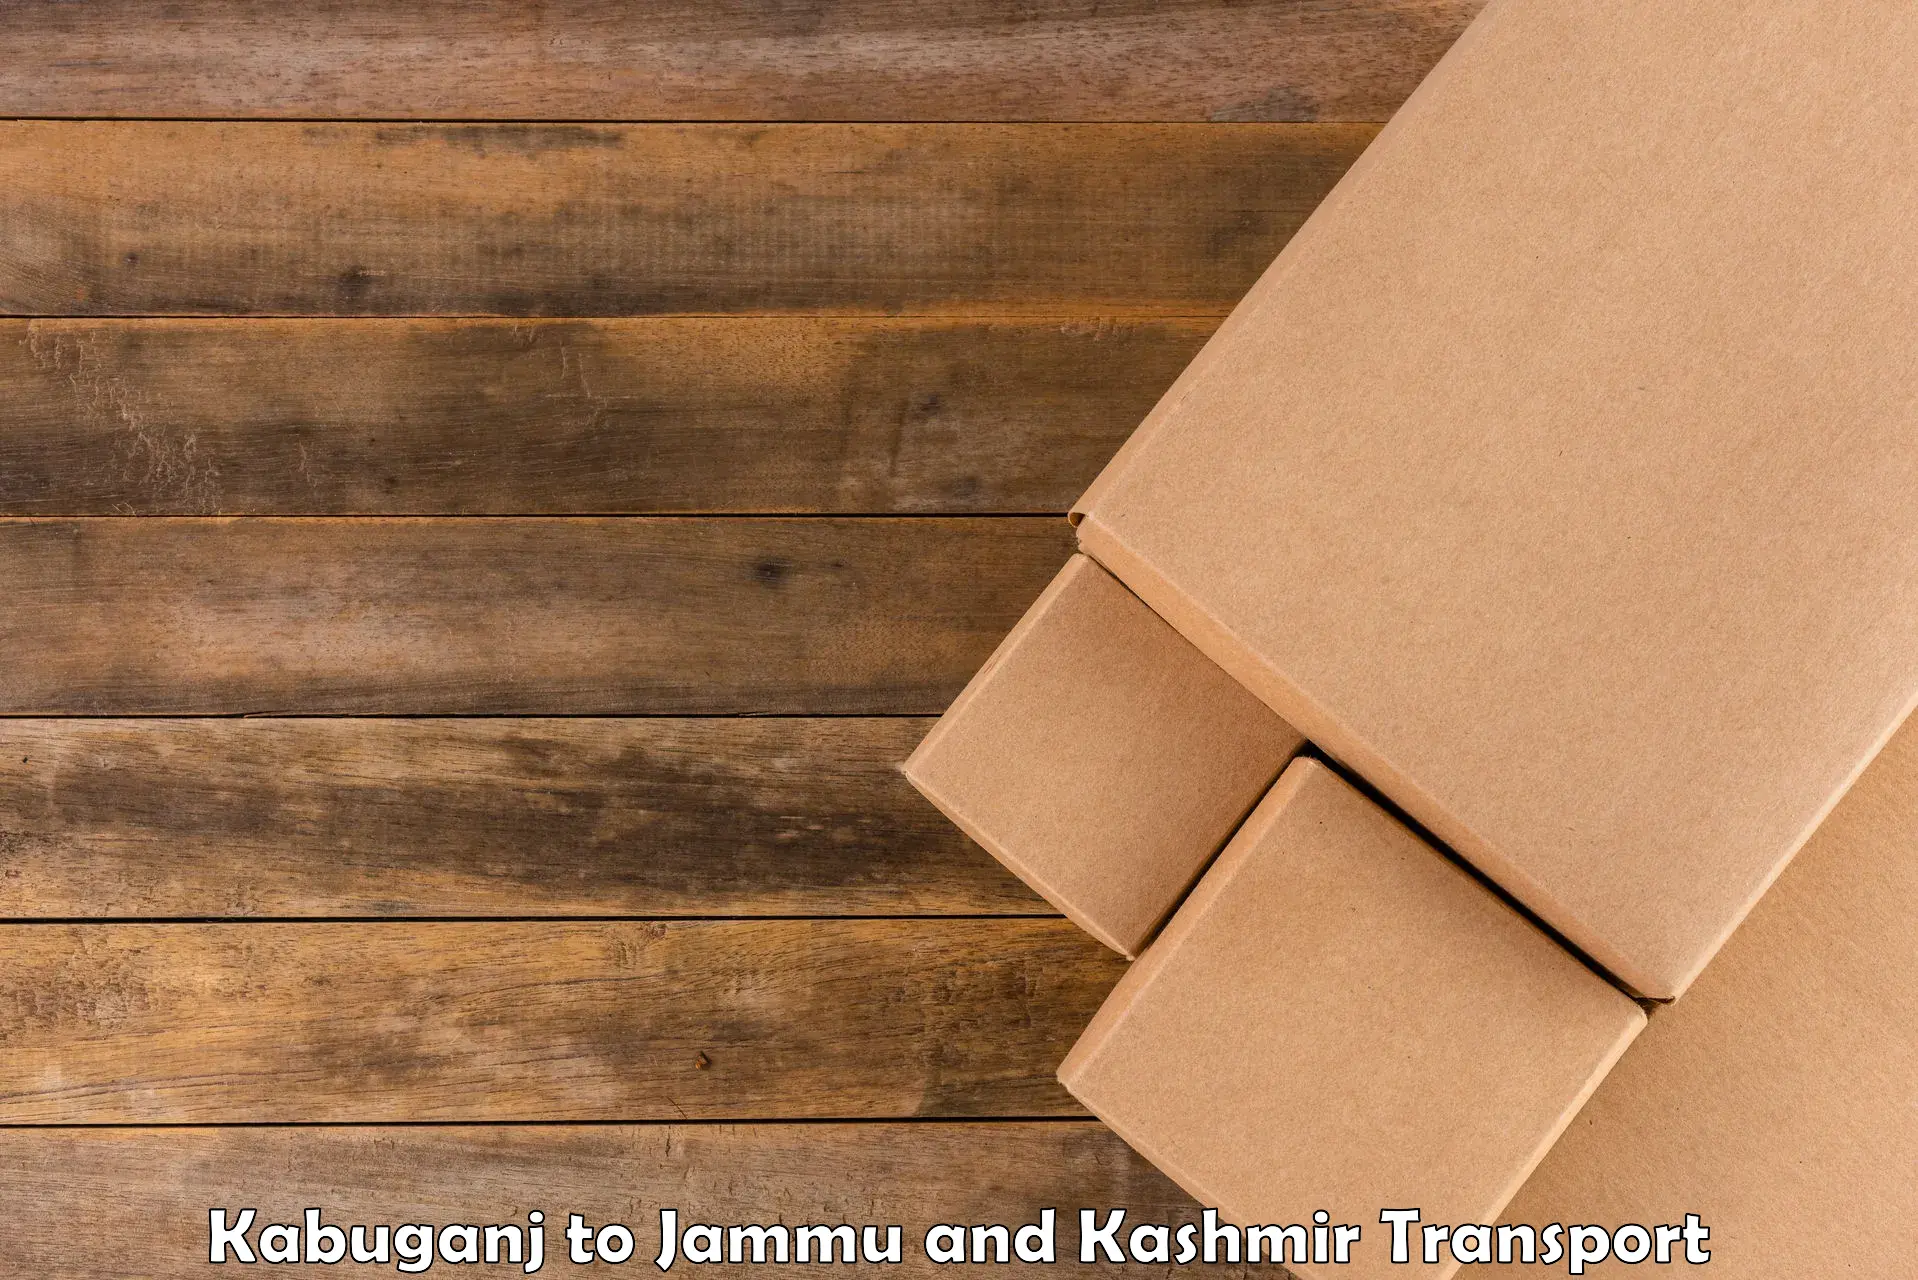 Furniture transport service Kabuganj to Bandipur